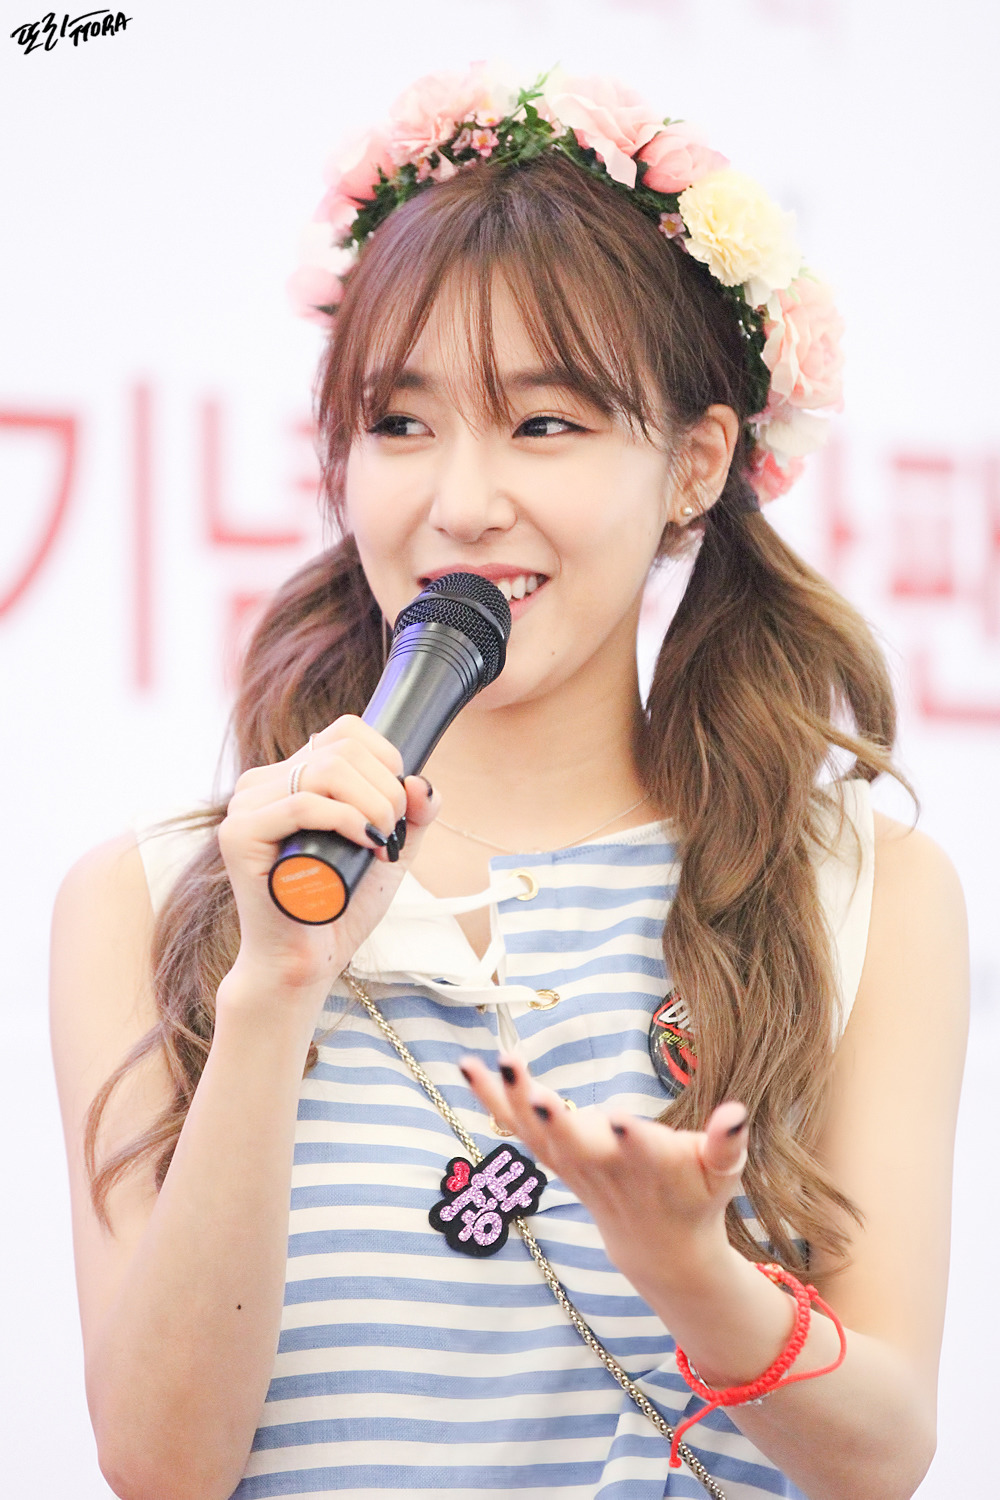 [PIC][06-06-2016]Tiffany tham dự buổi Fansign cho "I Just Wanna Dance" tại Busan vào chiều nay - Page 5 271A654757C557740E0B34